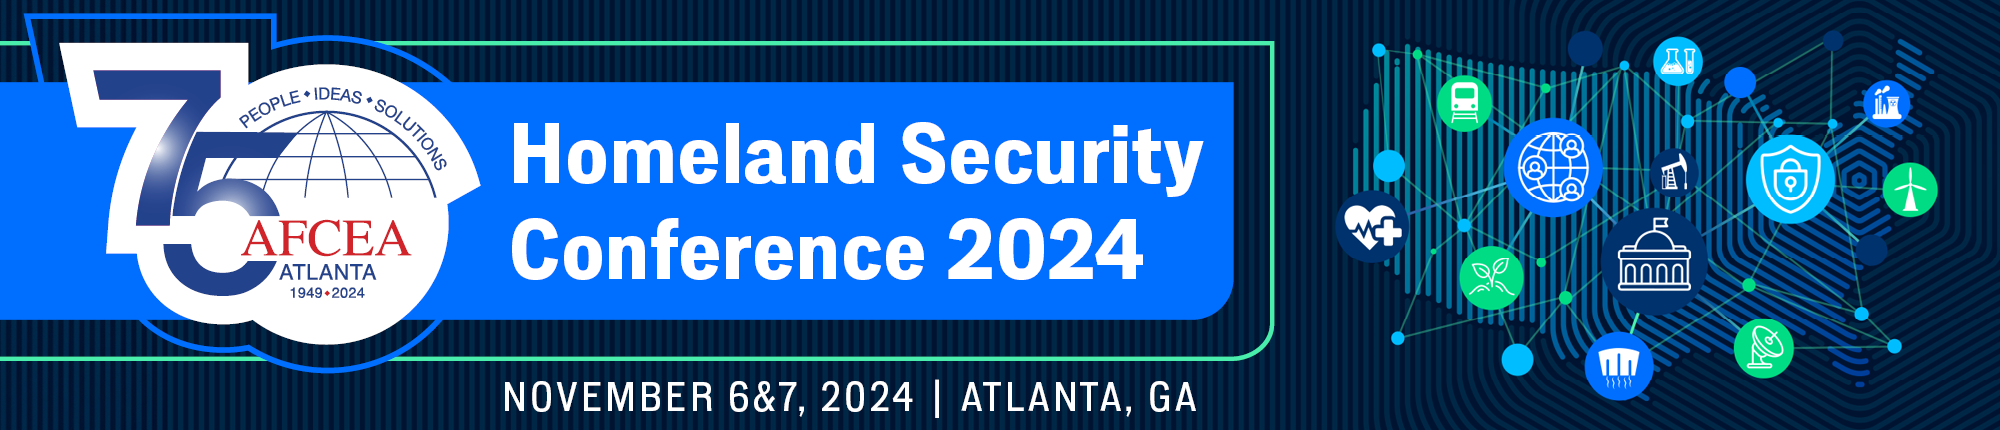 Atlanta AFCEA Homeland Security Conference